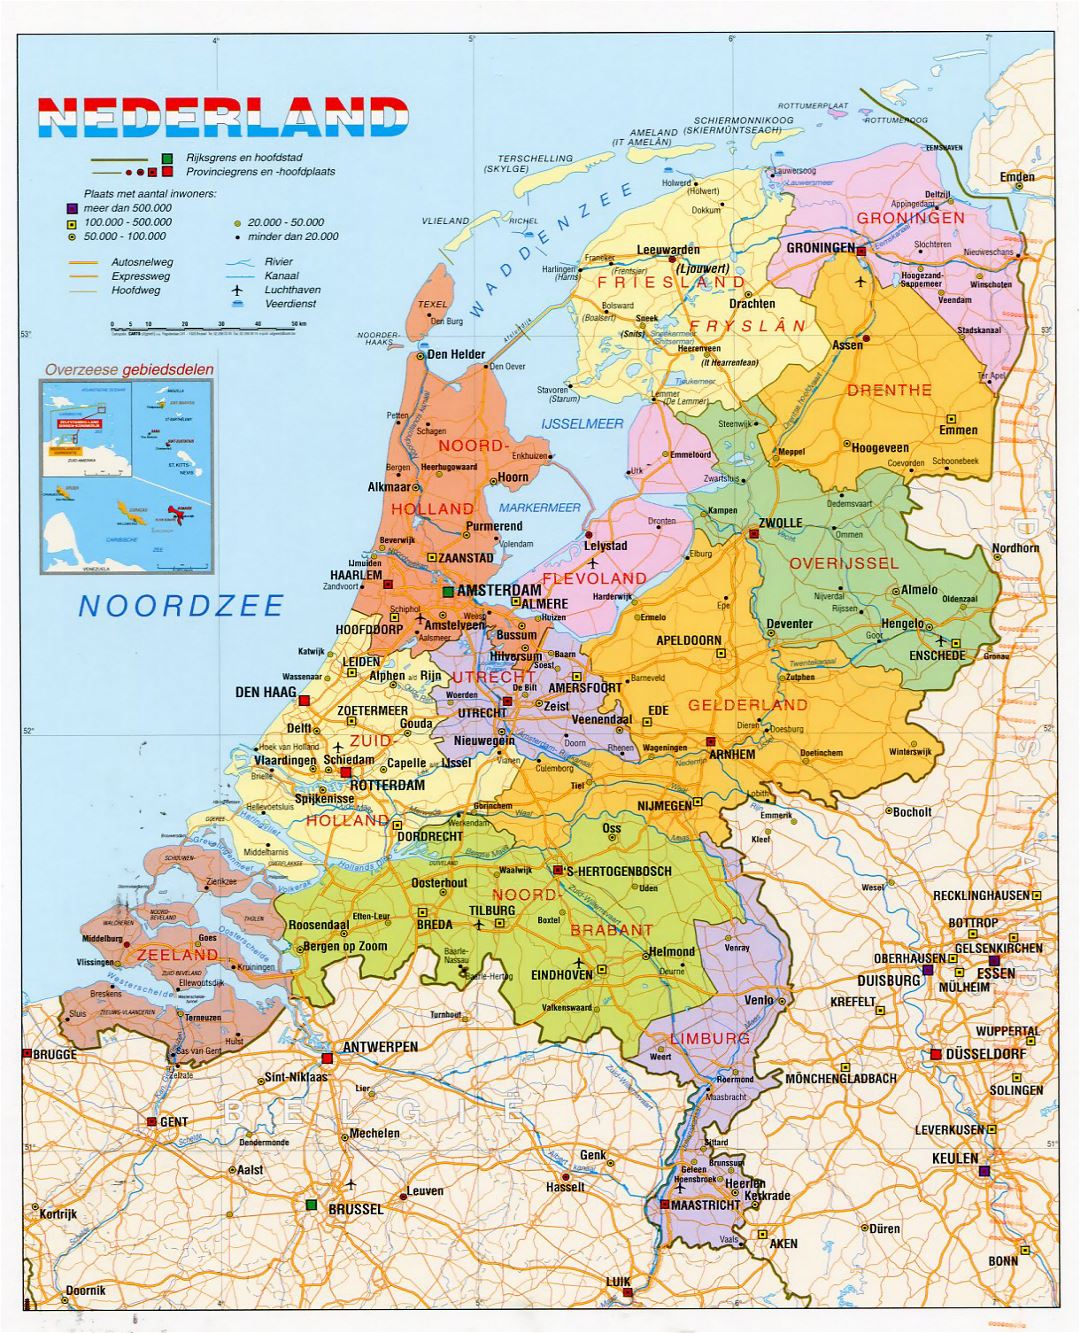 Детальная политическая и административная карта Нидерландов с дорогами, городами и аэропортами